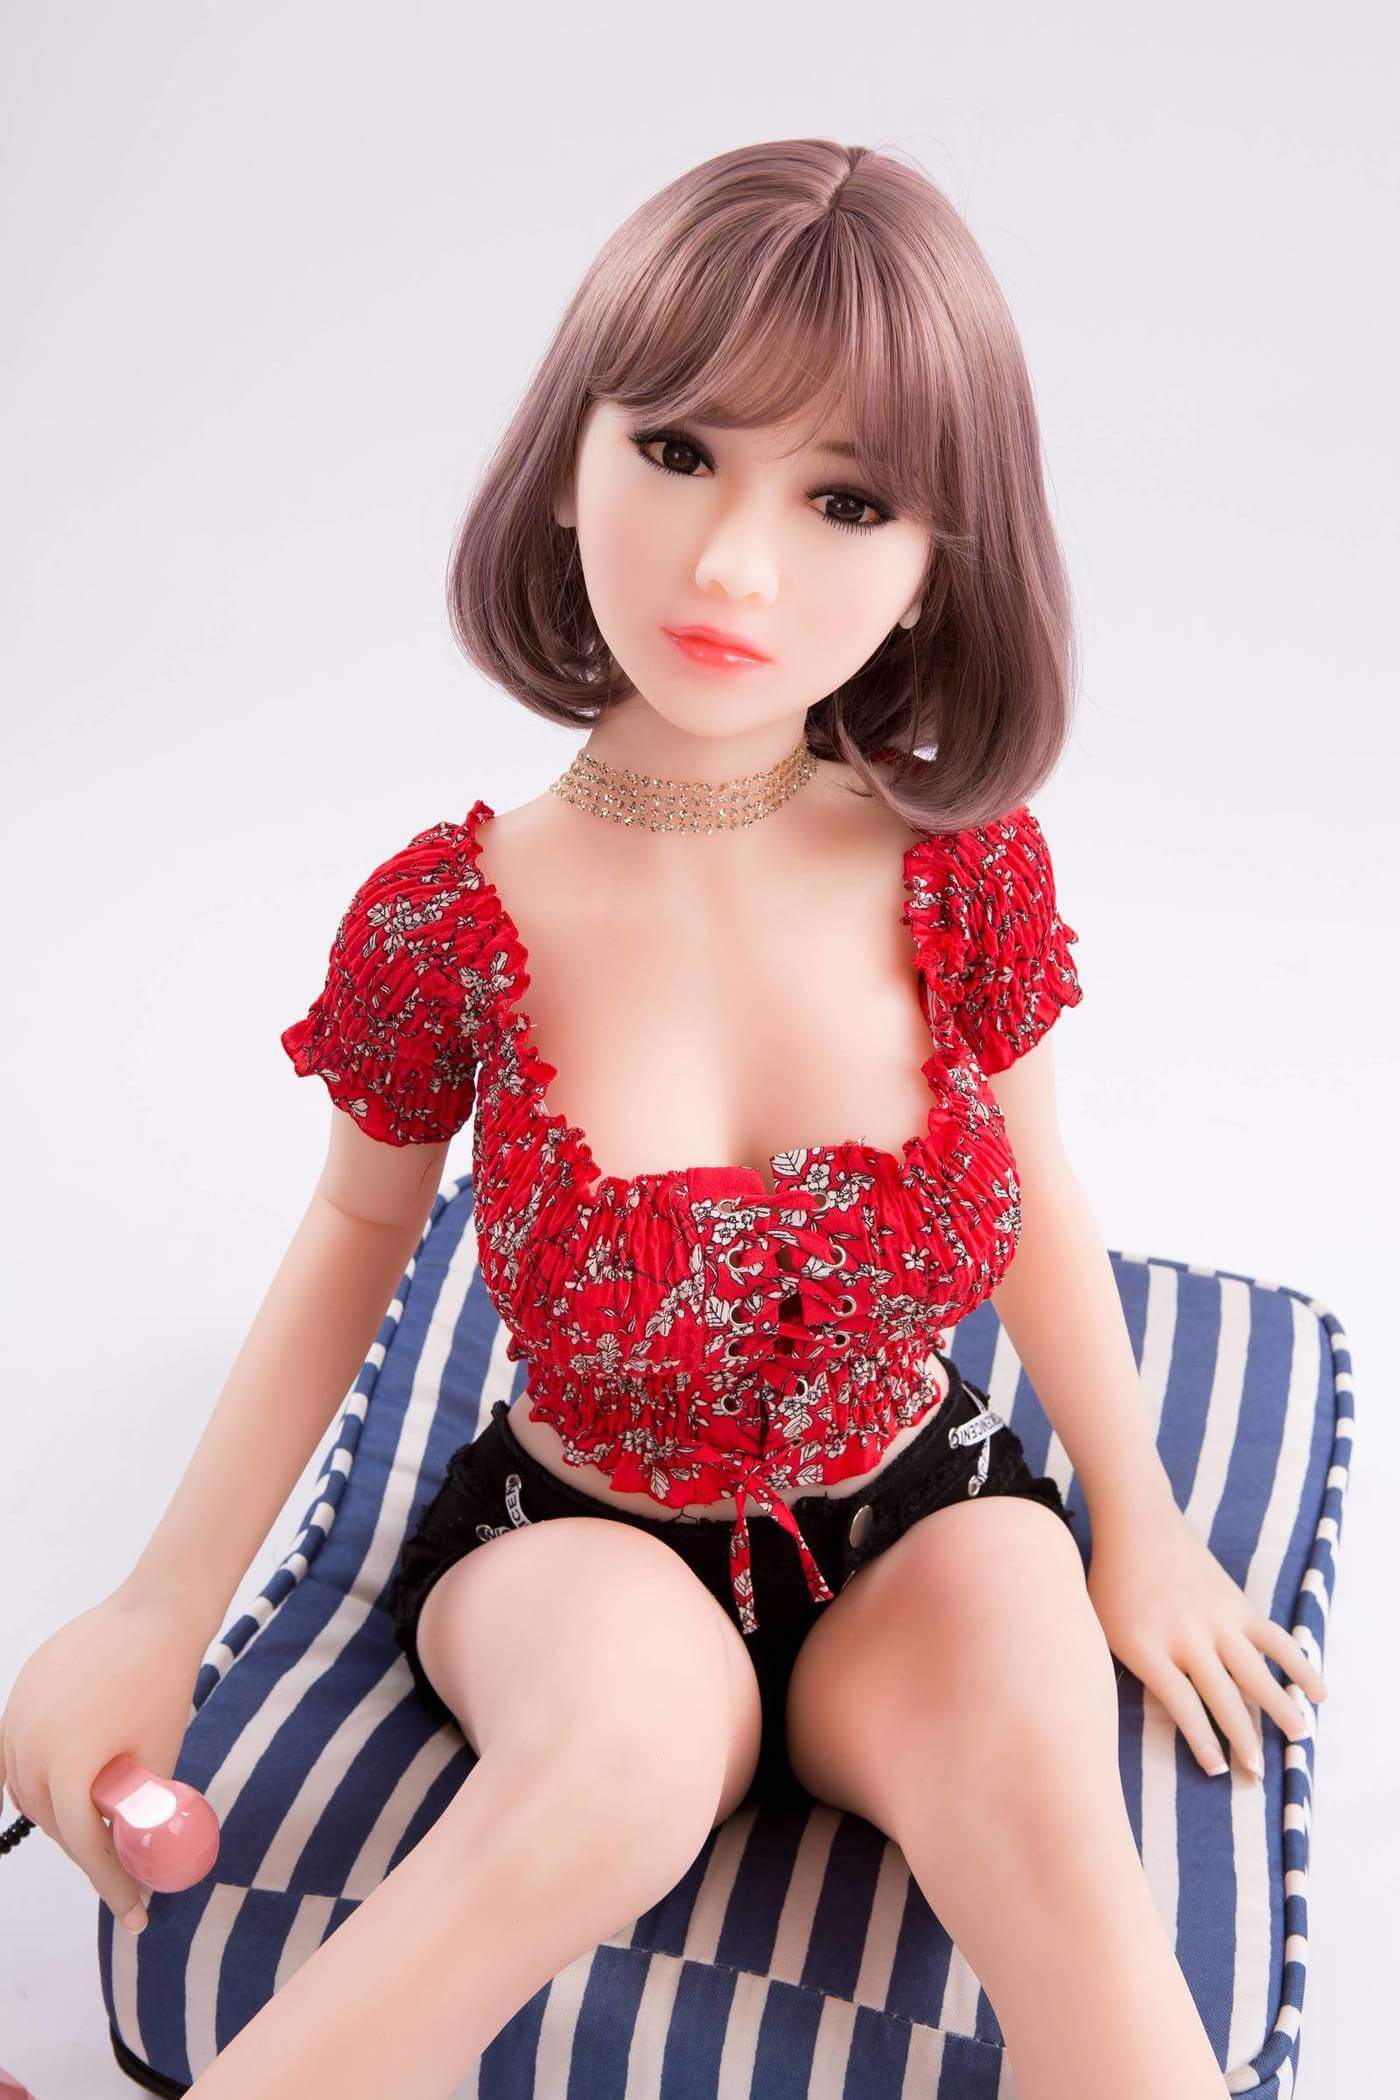 Asian teen short hair sex dolls_9_1